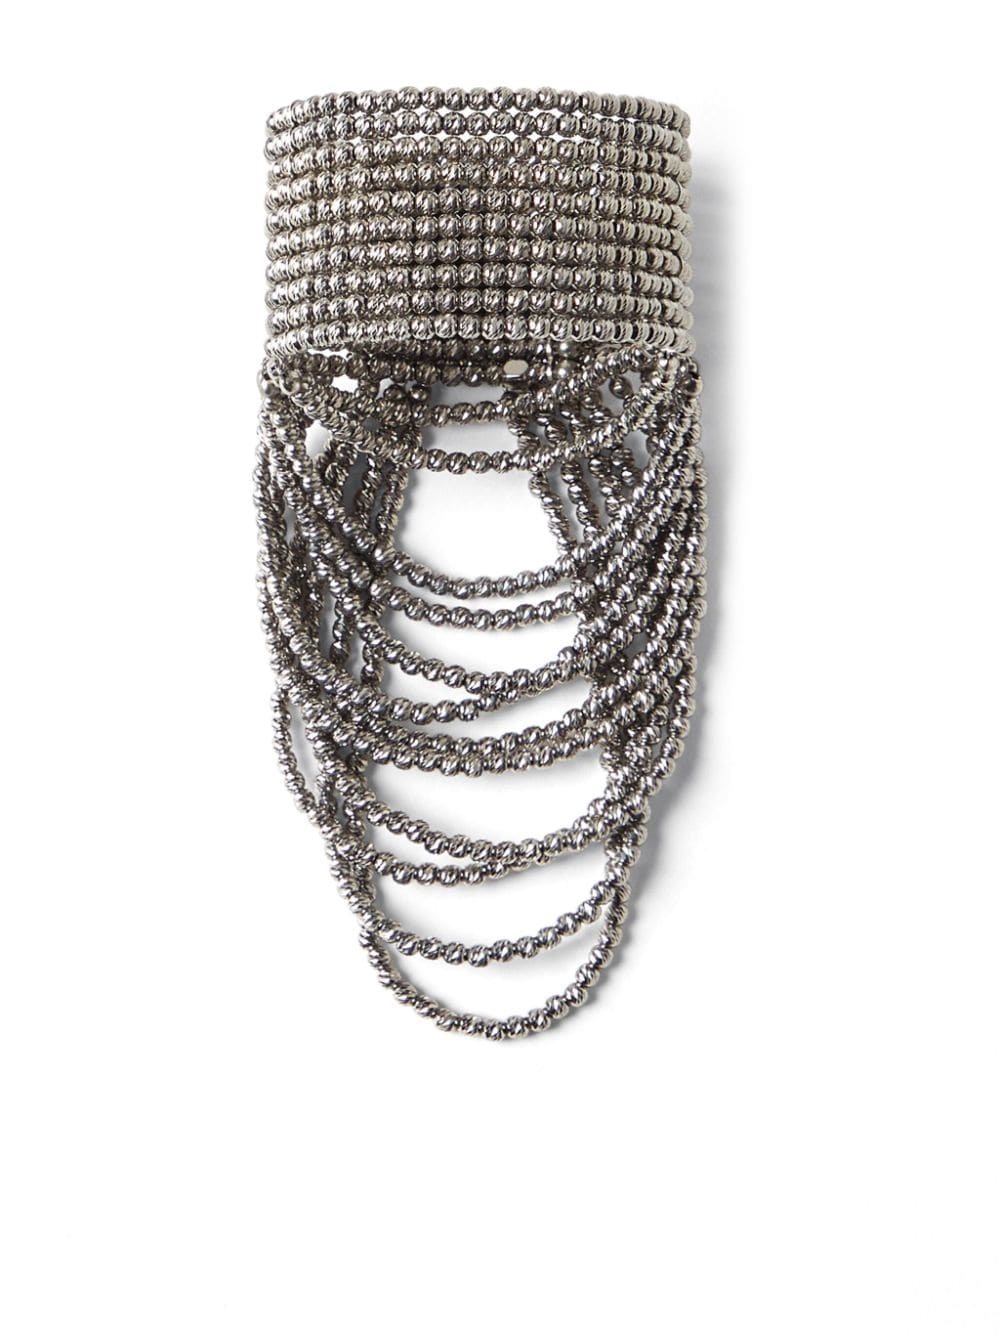 sterling silver draped cuff bracelet - 3